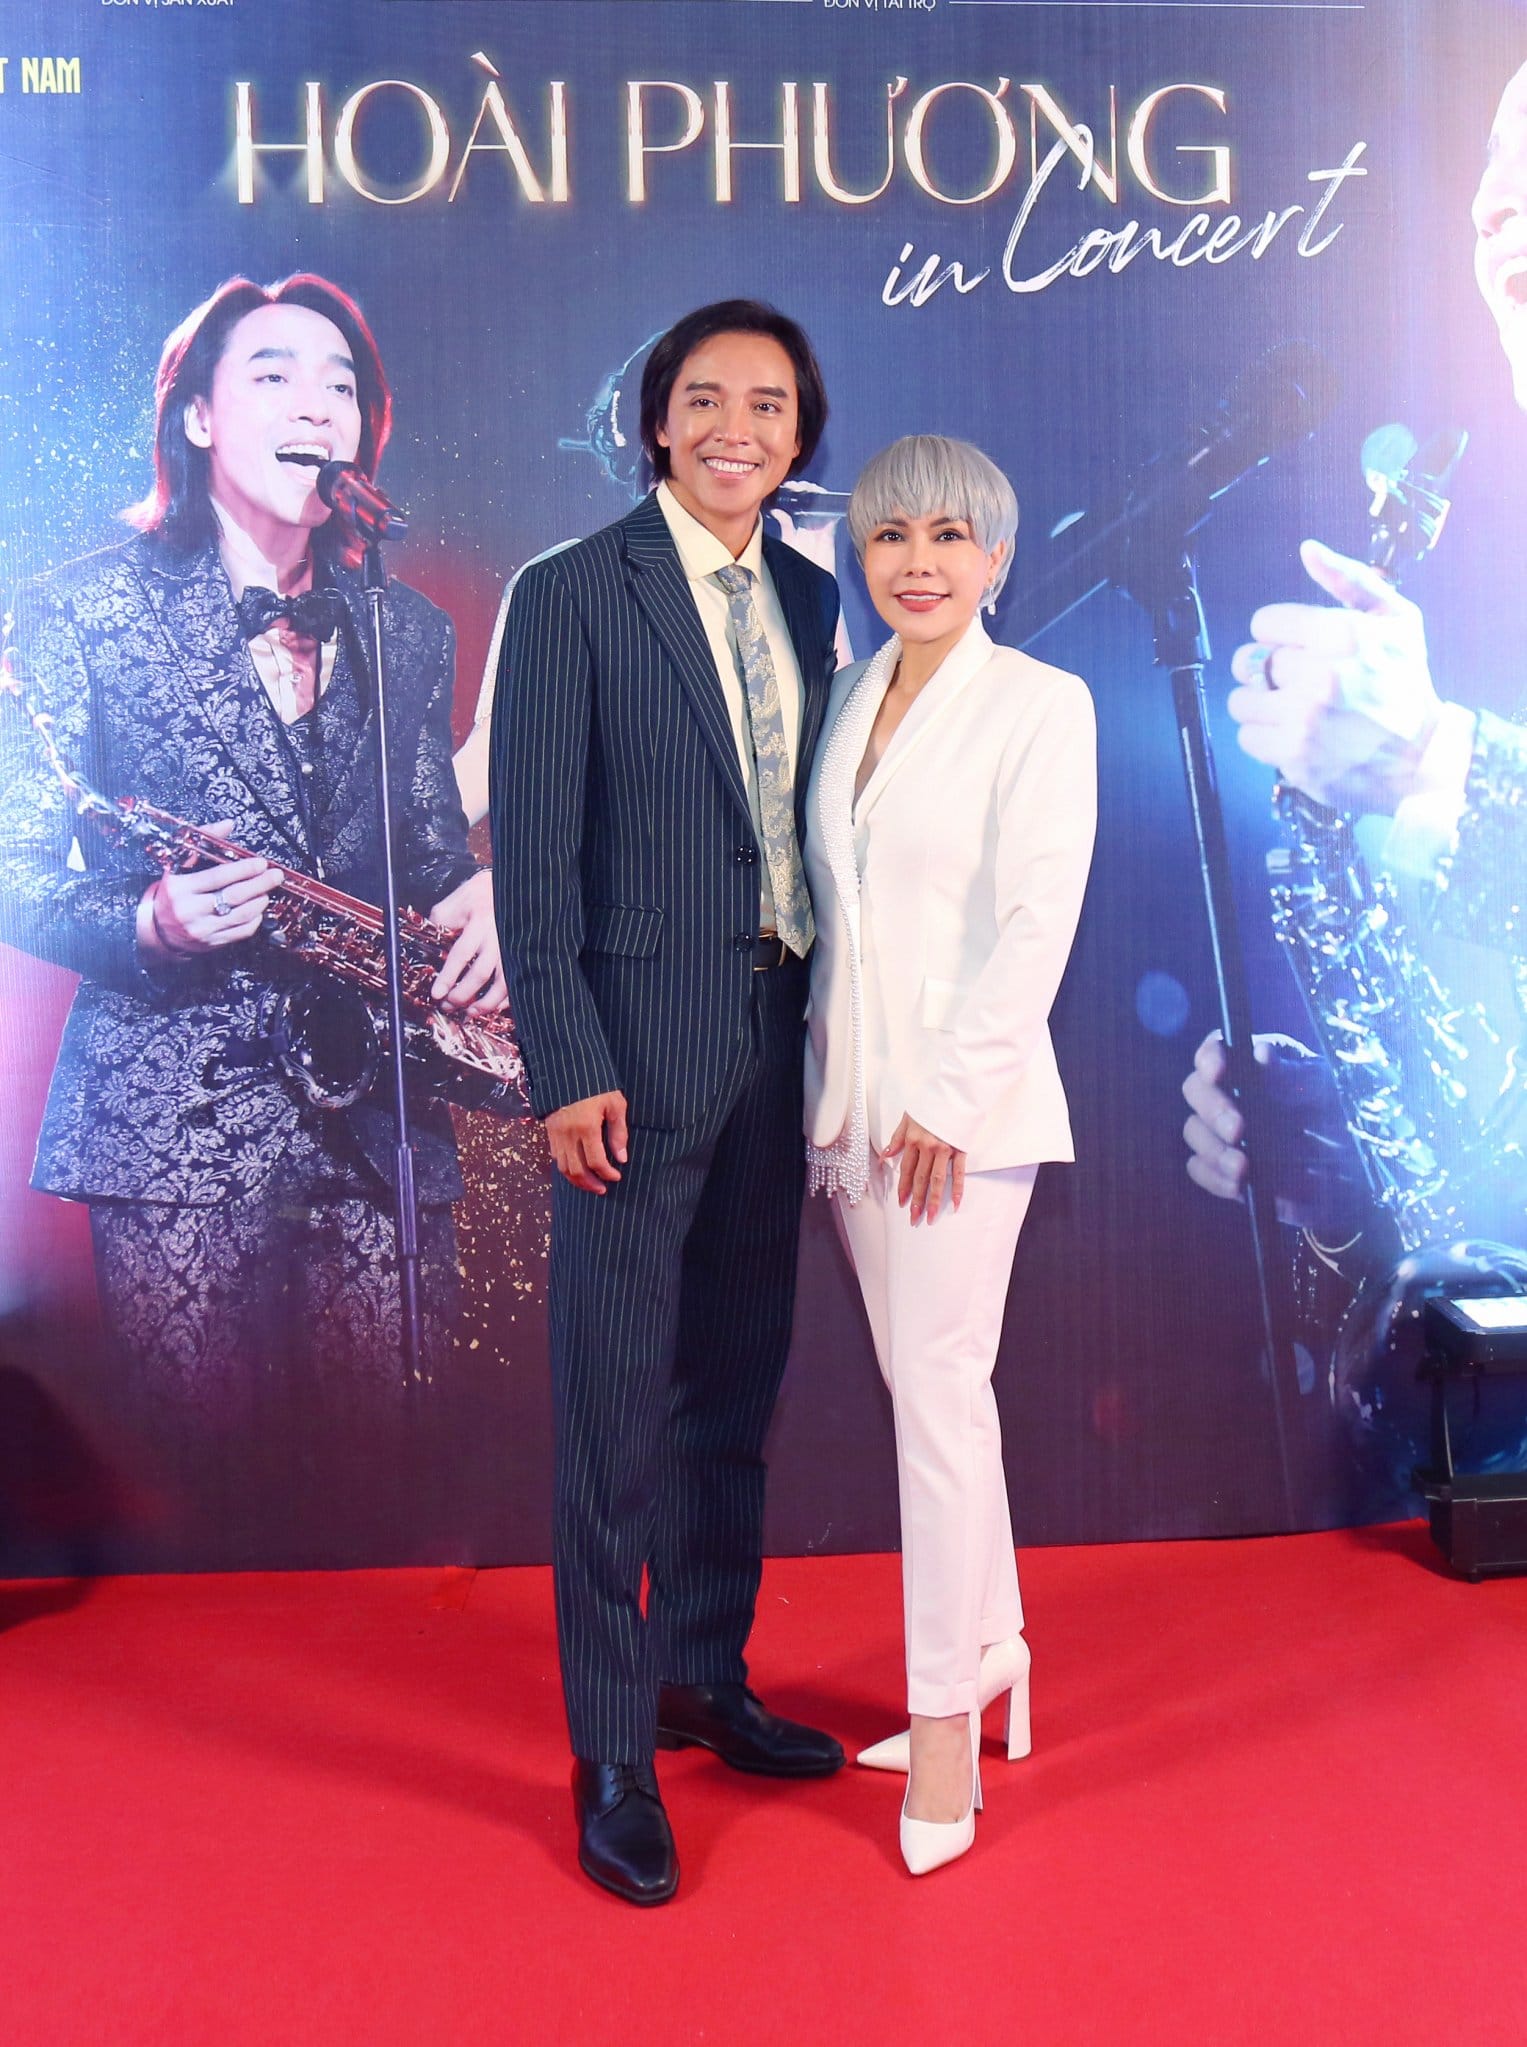 Nghệ sĩ Việt Hương khiến fan hoang mang với mái tóc 'bạc trắng', gửi lời đặc biệt đến chồng trong ngày sinh nhật - ảnh 4